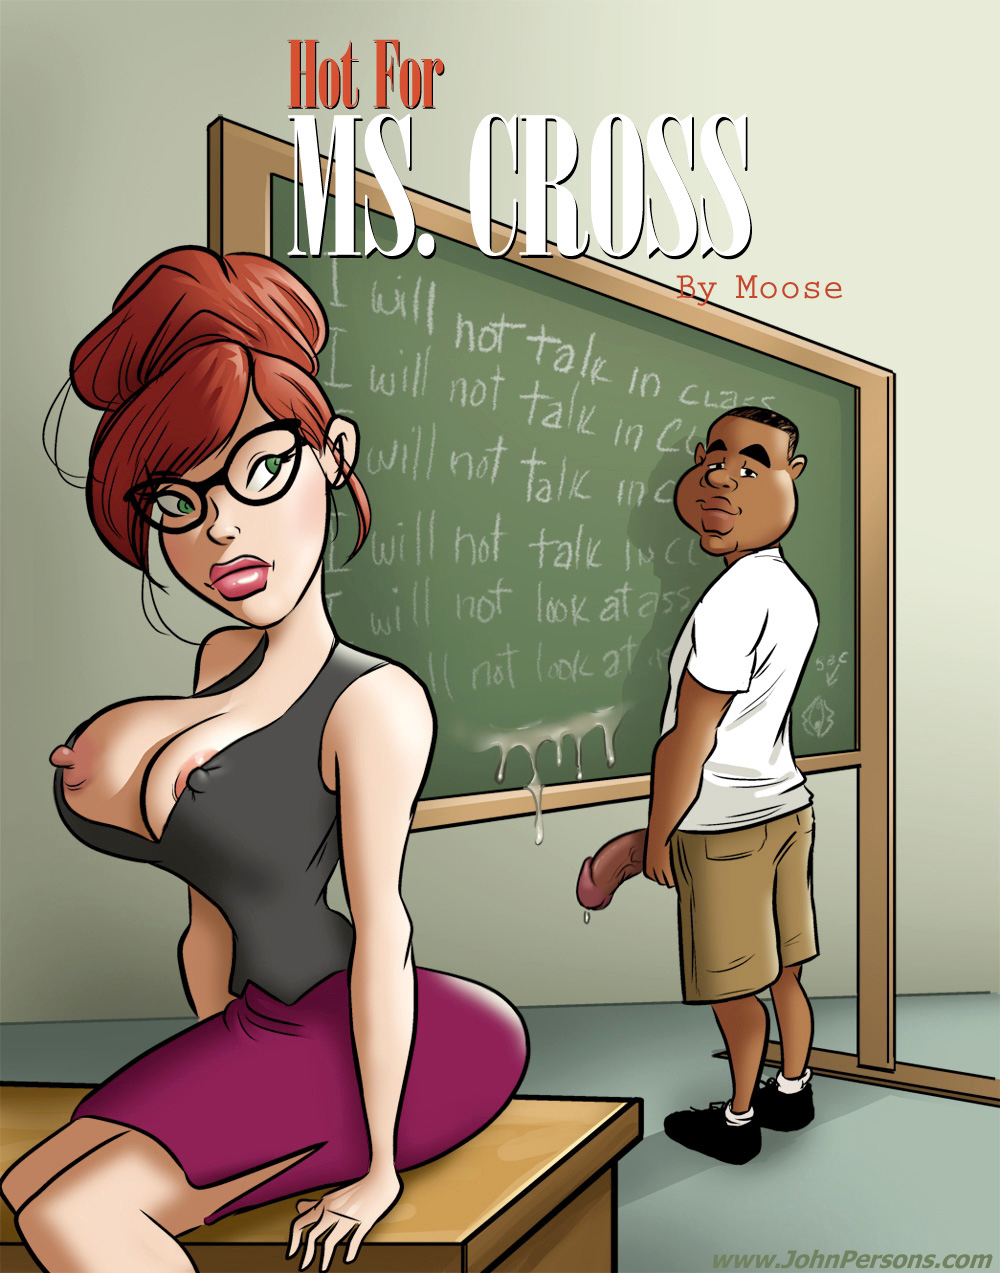 Ms. Cross